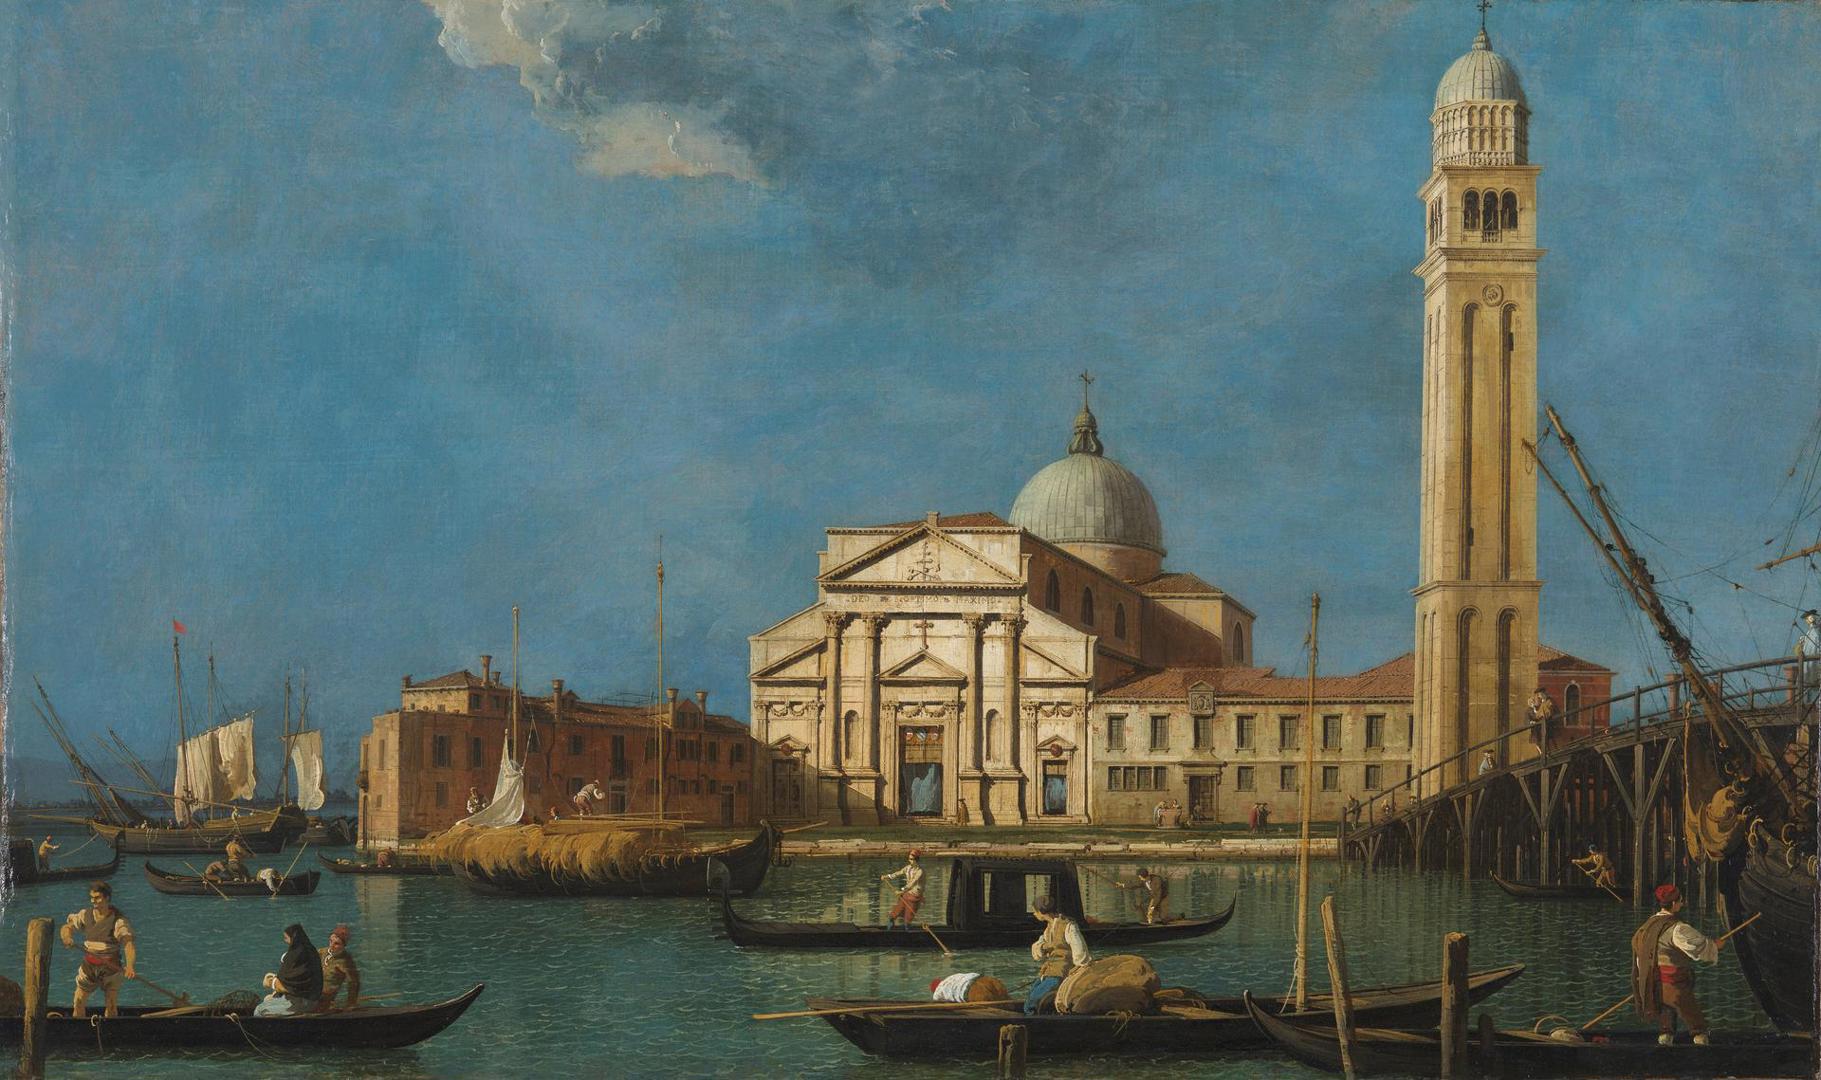 Venice: S. Pietro in Castello by Canaletto